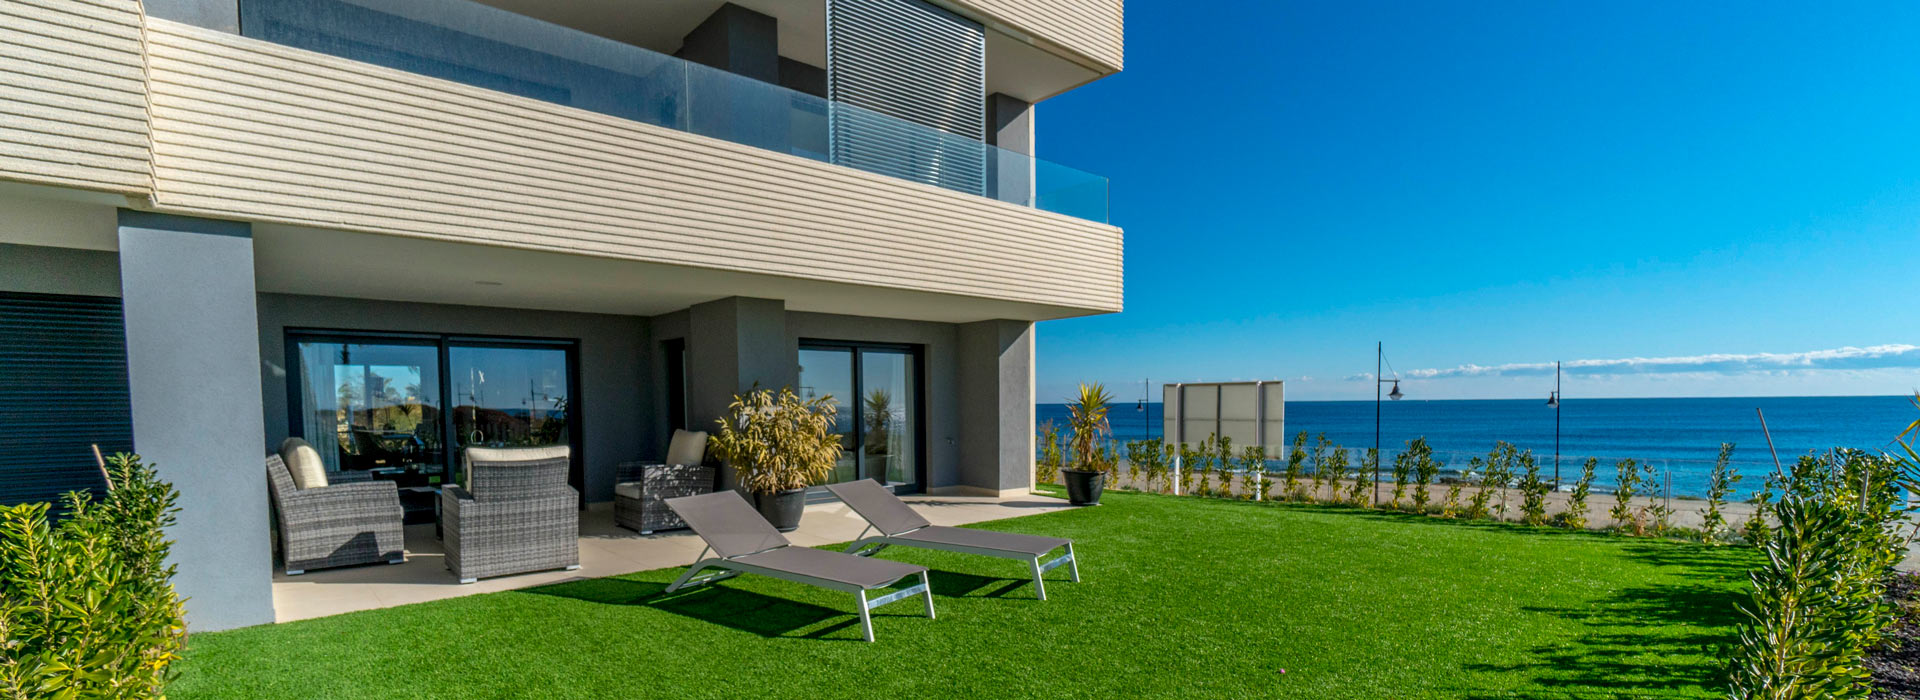 panorama mar venta viviendas gomendio constructores en Torrevieja Alicante